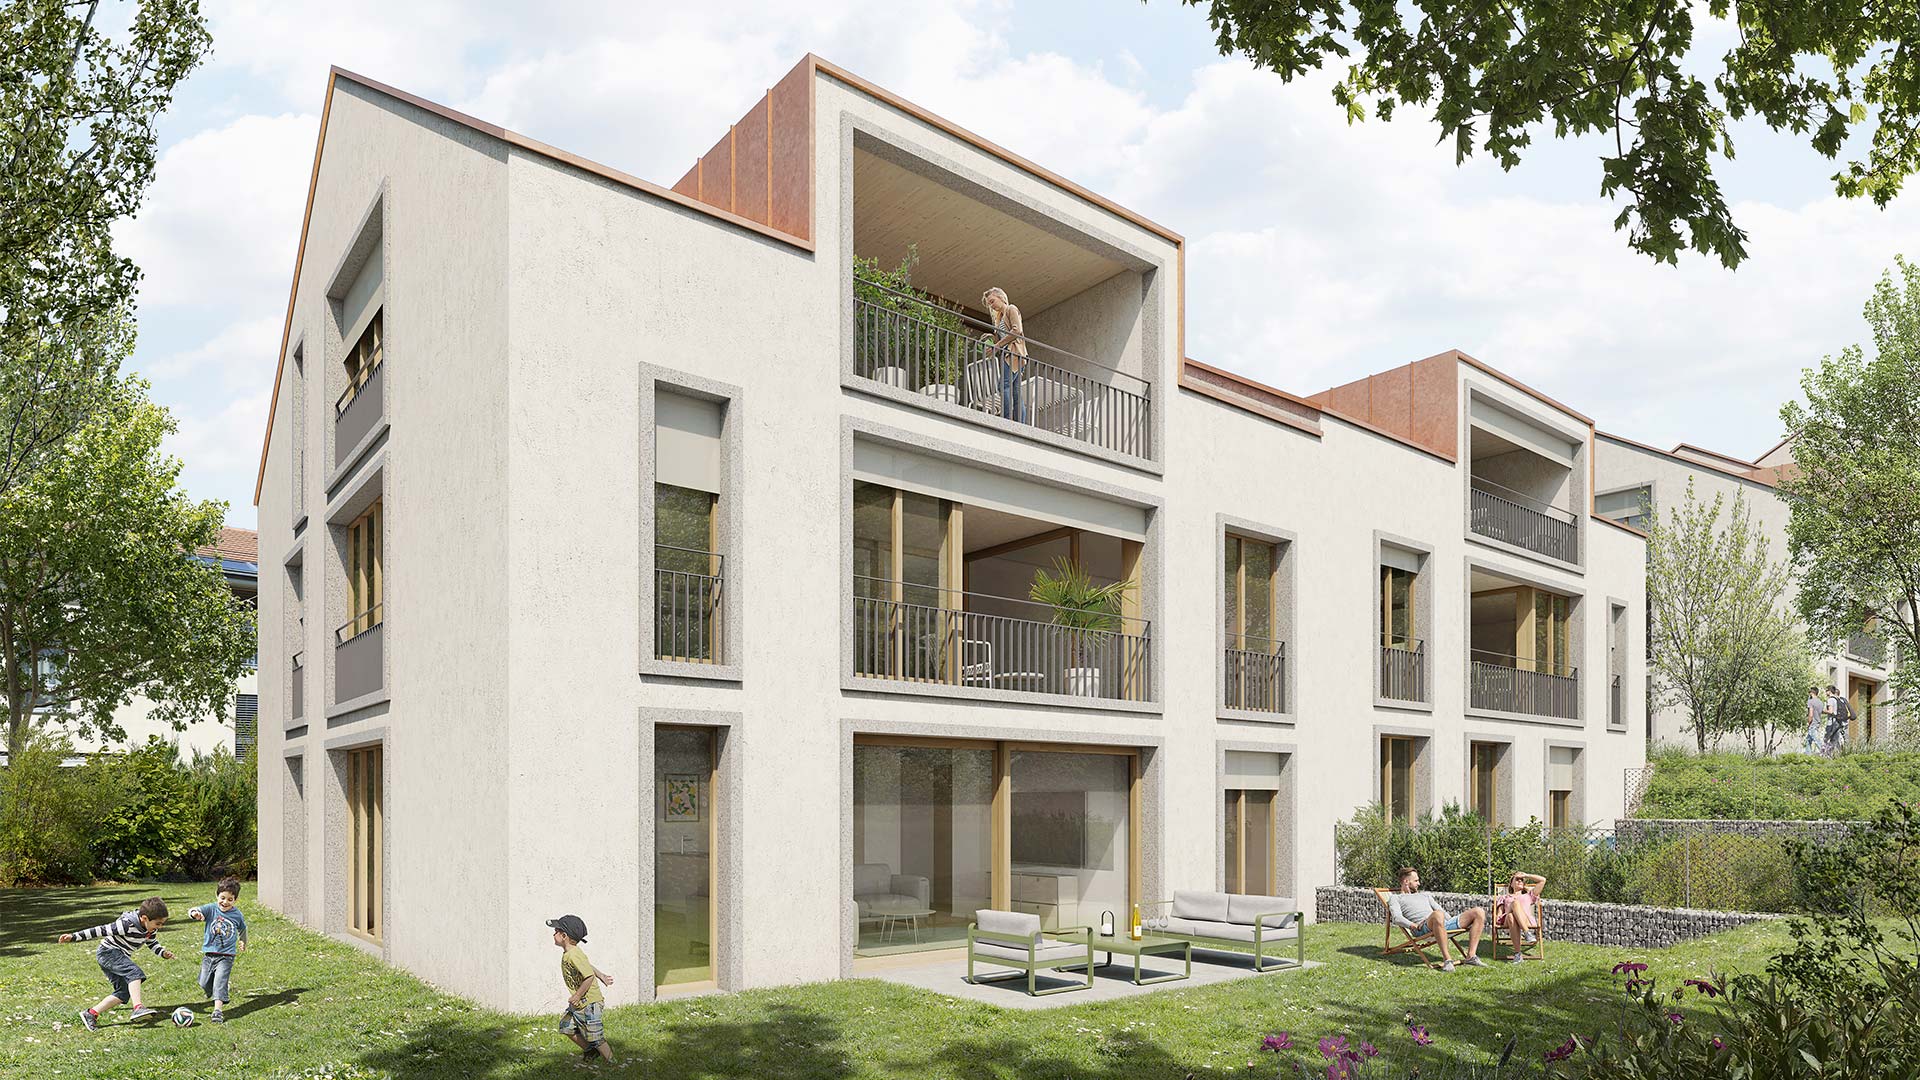 Image de synthèse de la promotion immobilière à Bernex Place côté terrasses, construction de 20 appartements de 2.5 pièces à 6 pièces